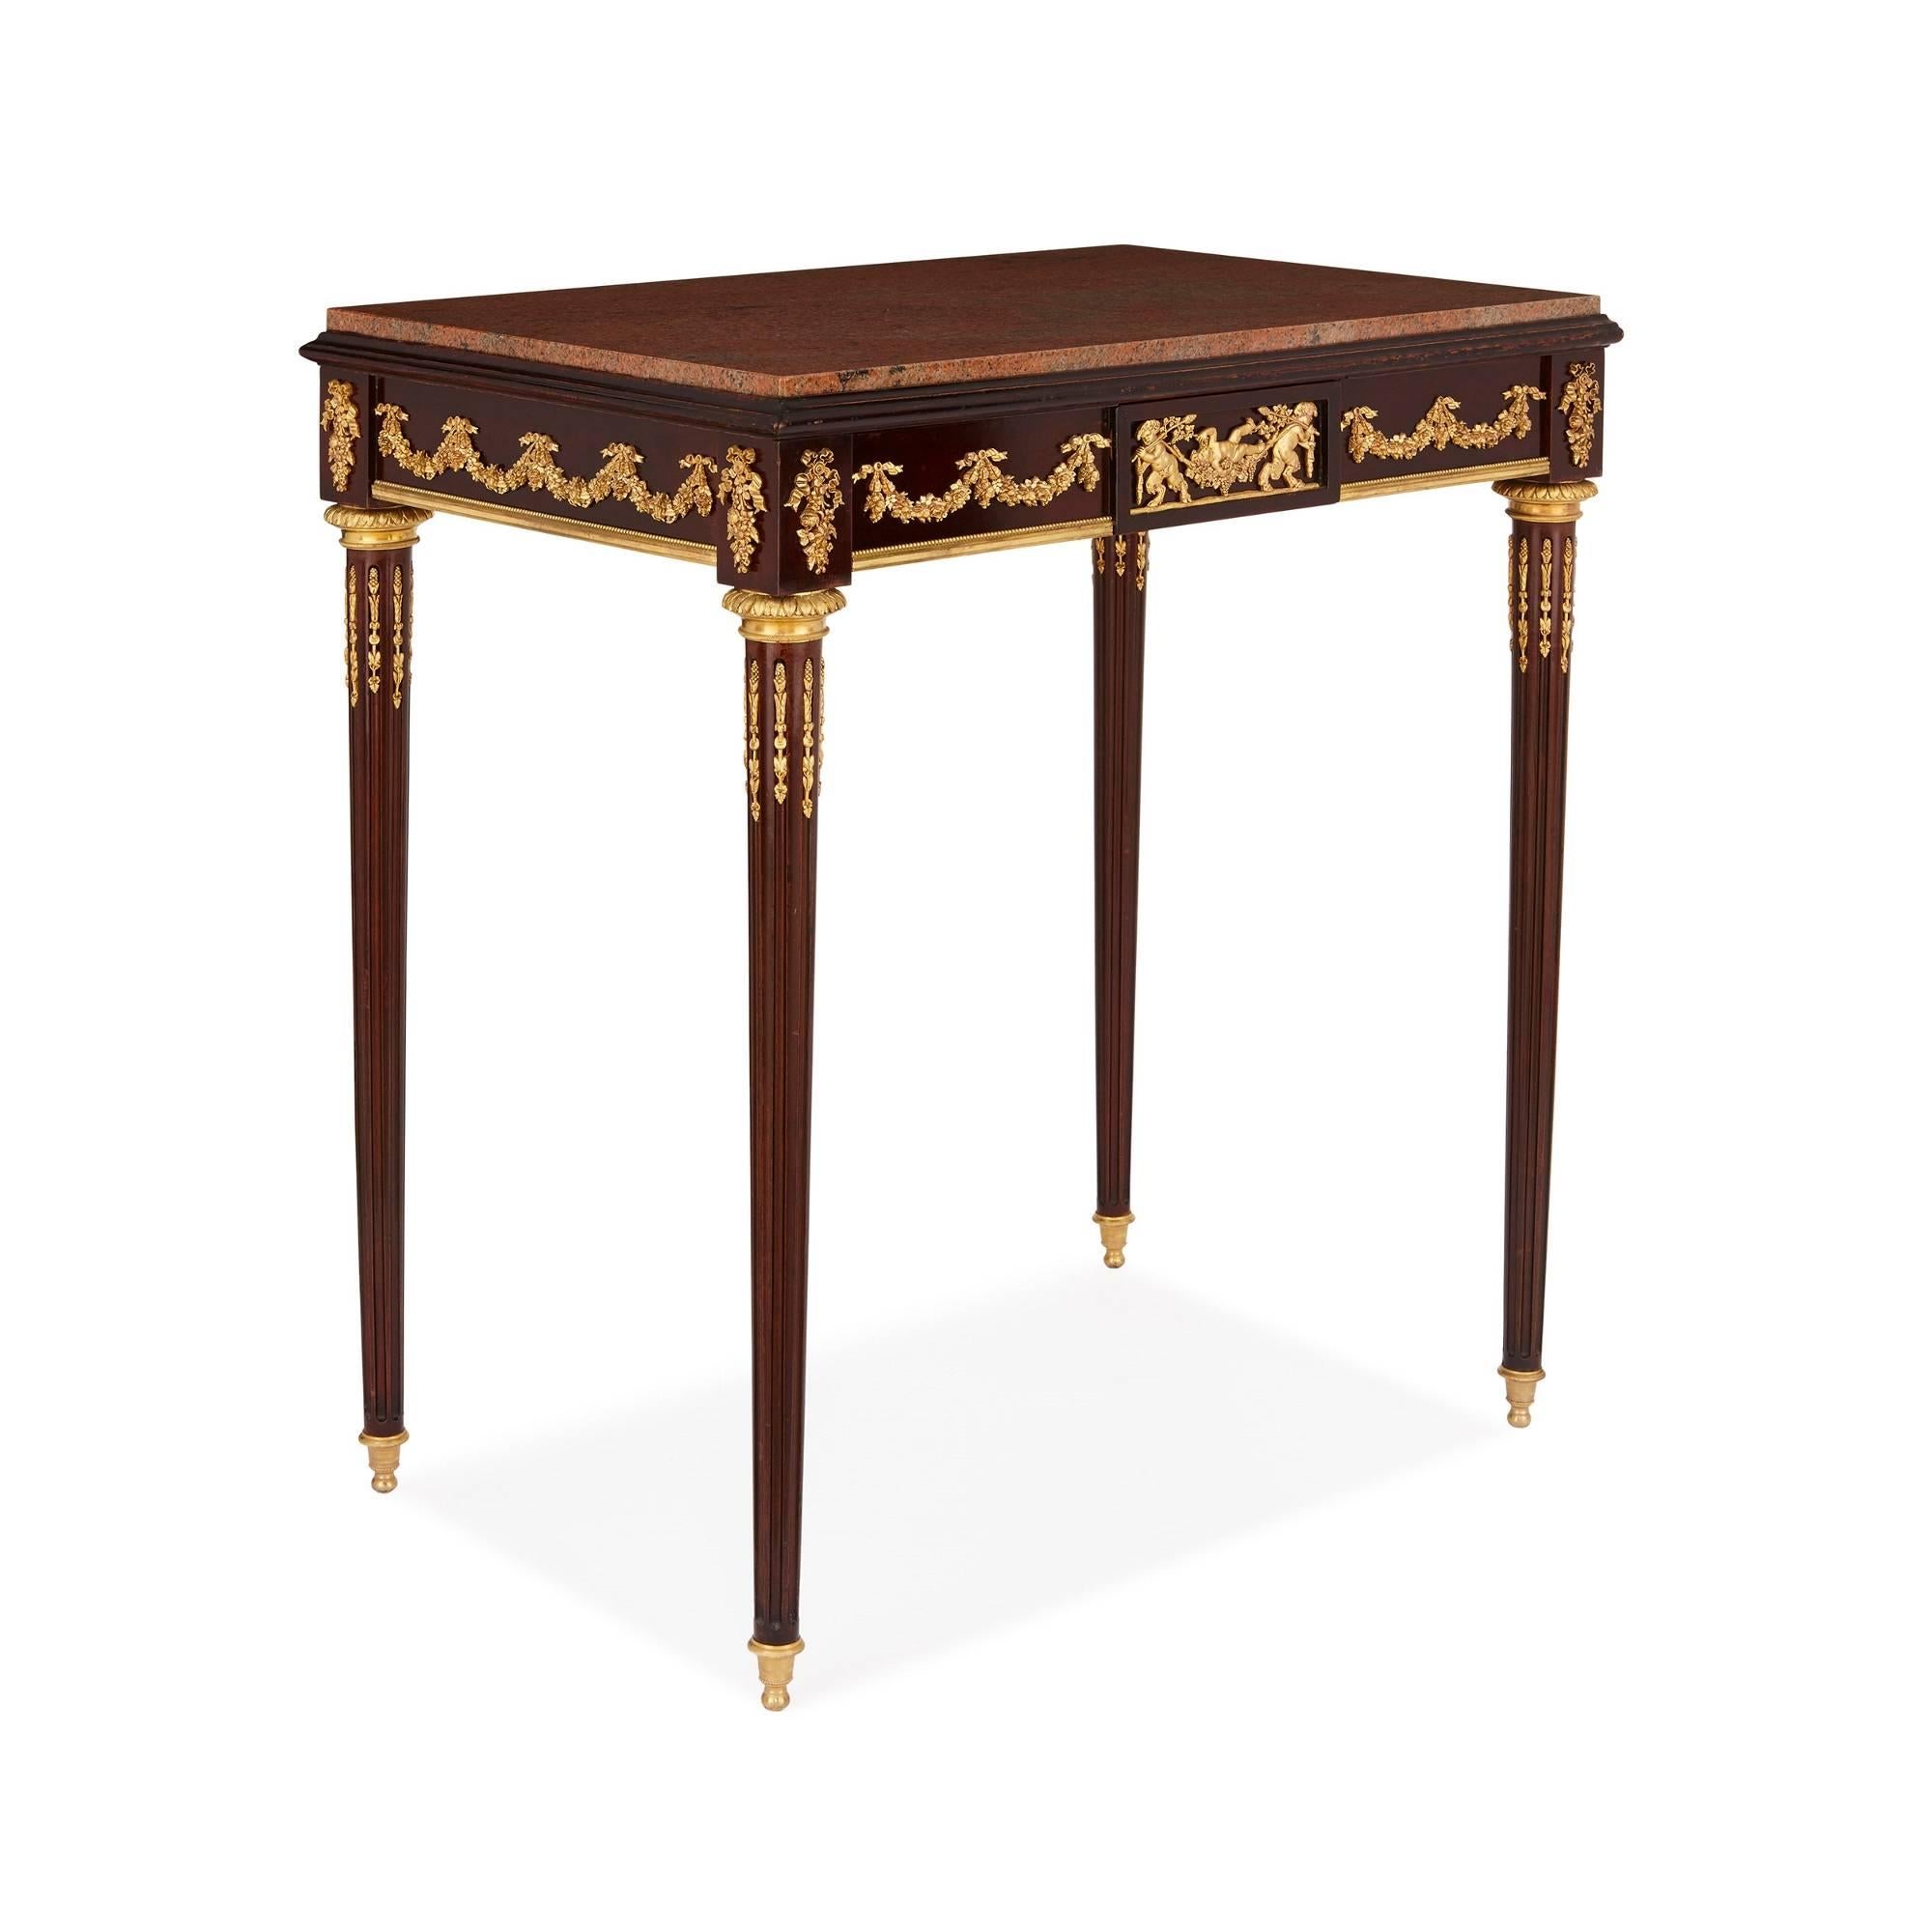 Die wunderschönen neoklassizistischen Entwürfe von Jean-Henri Riesener (1735-1806), dem vielleicht berühmtesten Kunsttischler aller Zeiten, sind die Inspiration für diesen wunderschönen antiken Beistelltisch. Vor allem die Ormolu-Beschläge, die das